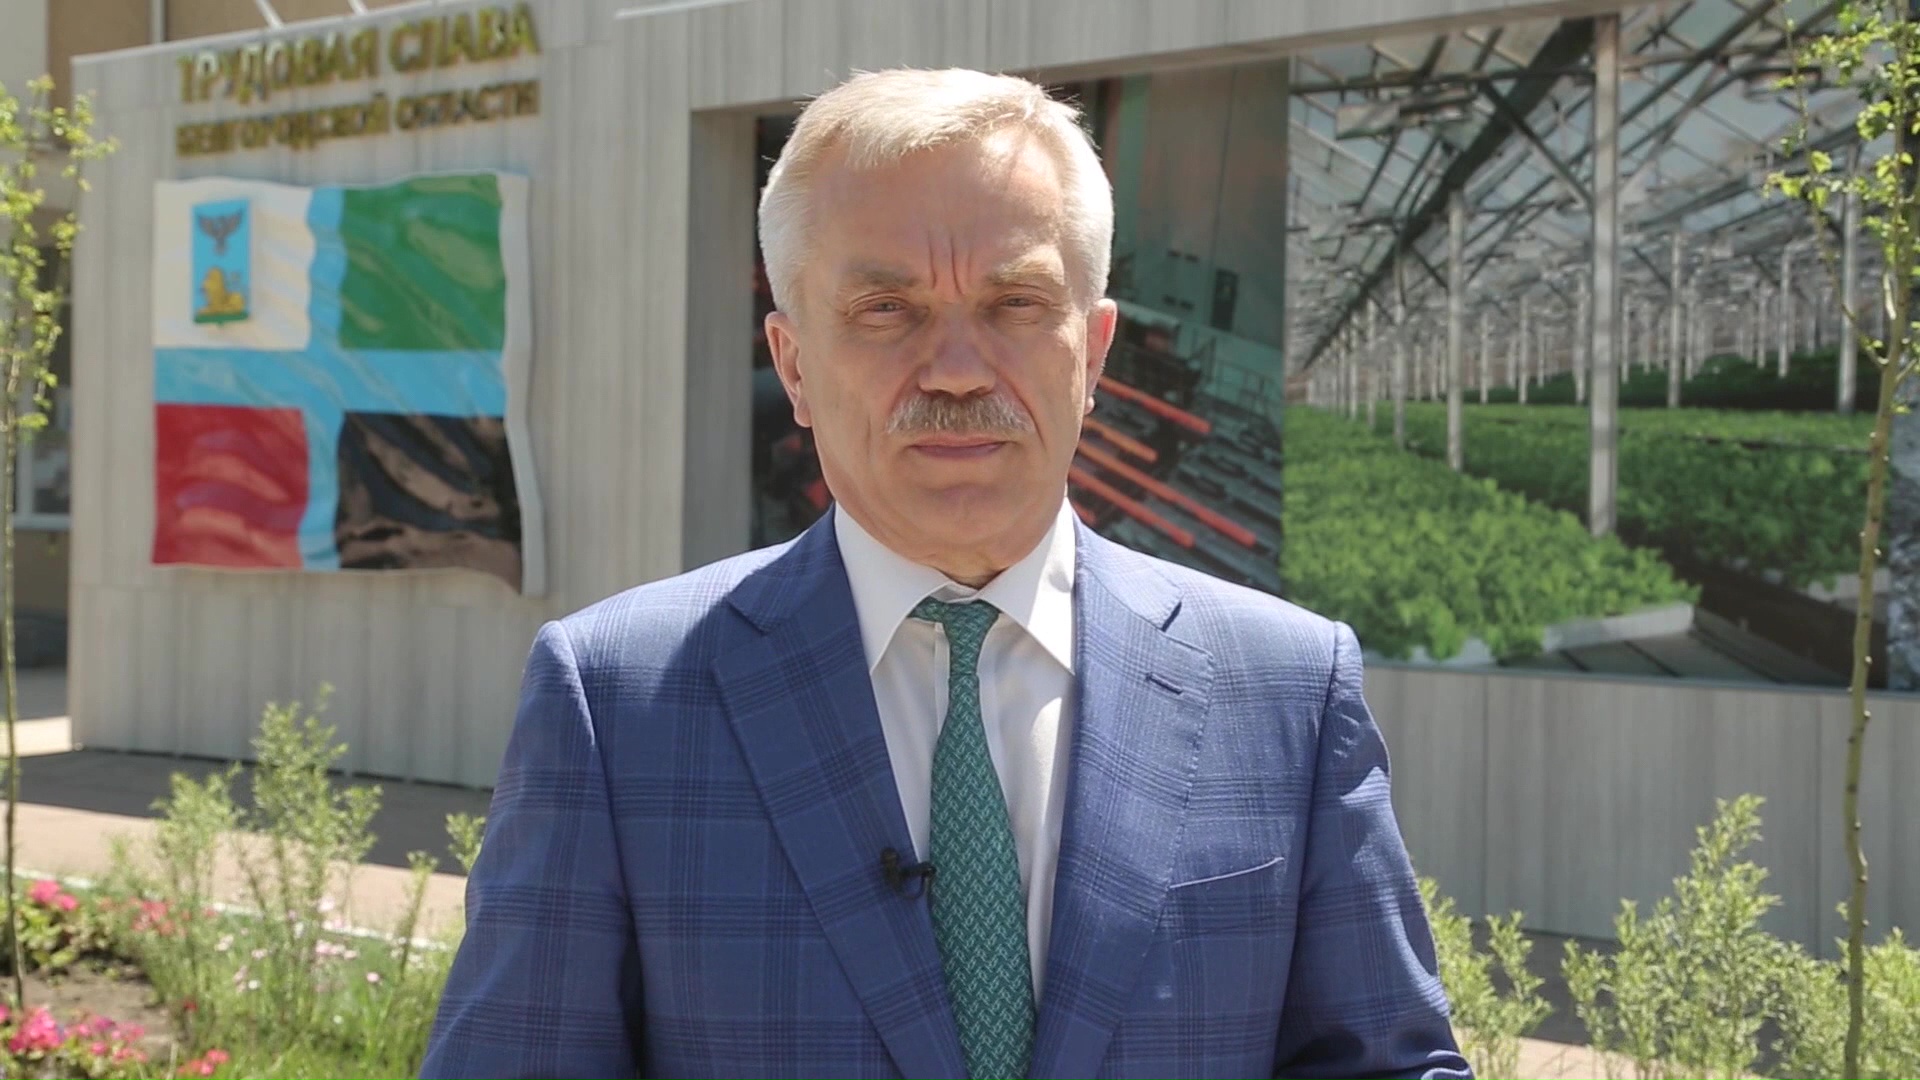 Ио губернатора Белгородской области 2020